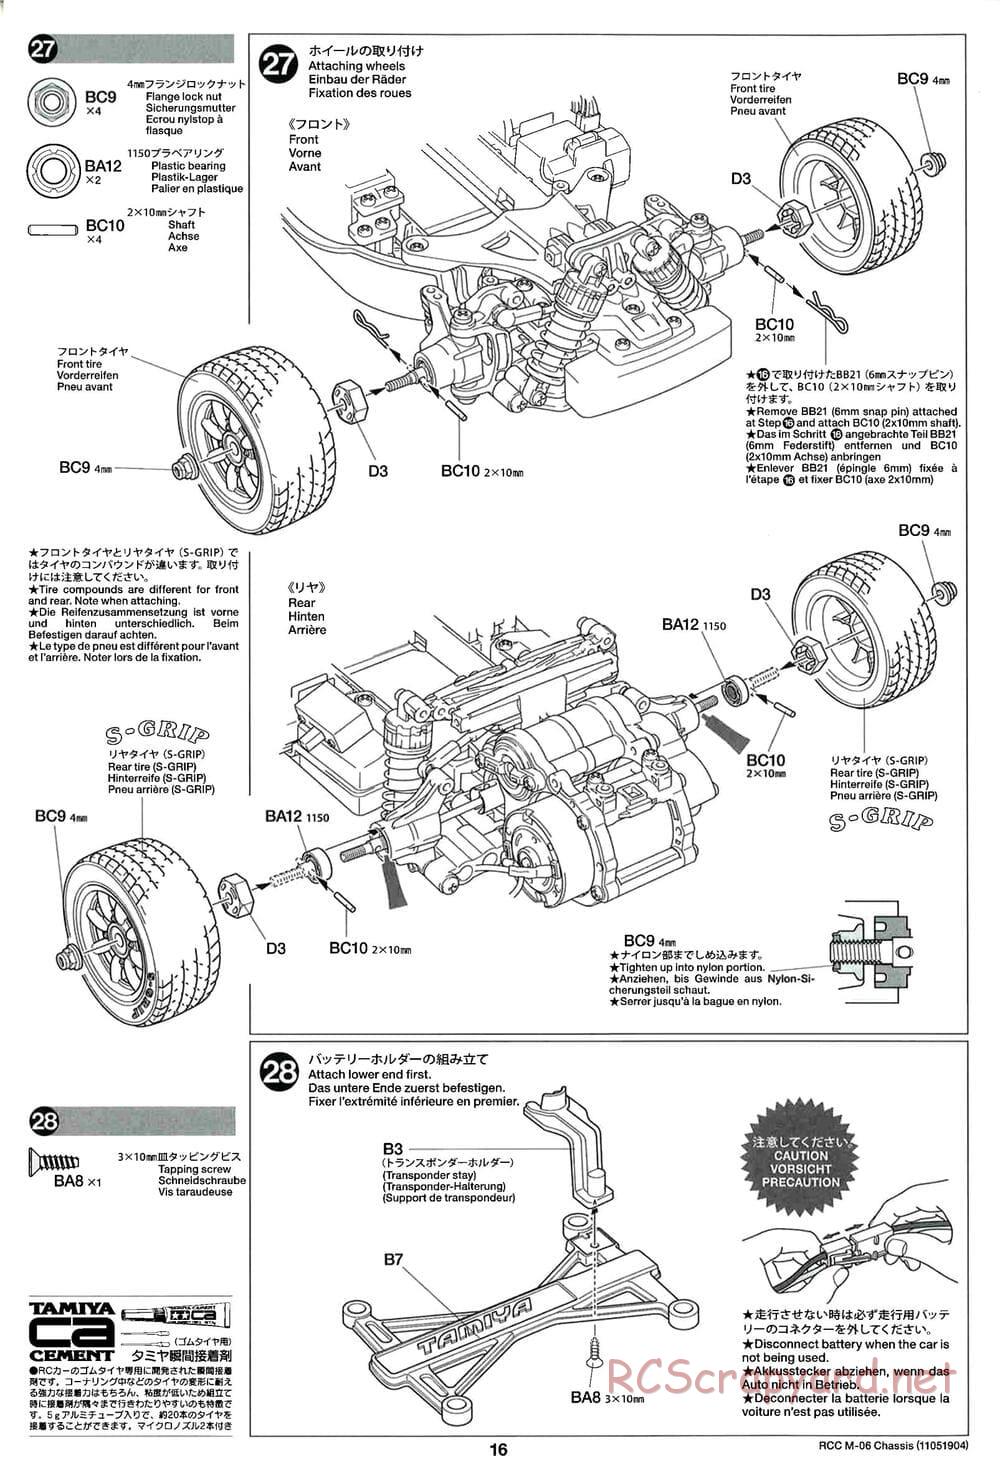 Tamiya - M-06 Chassis - Manual - Page 16